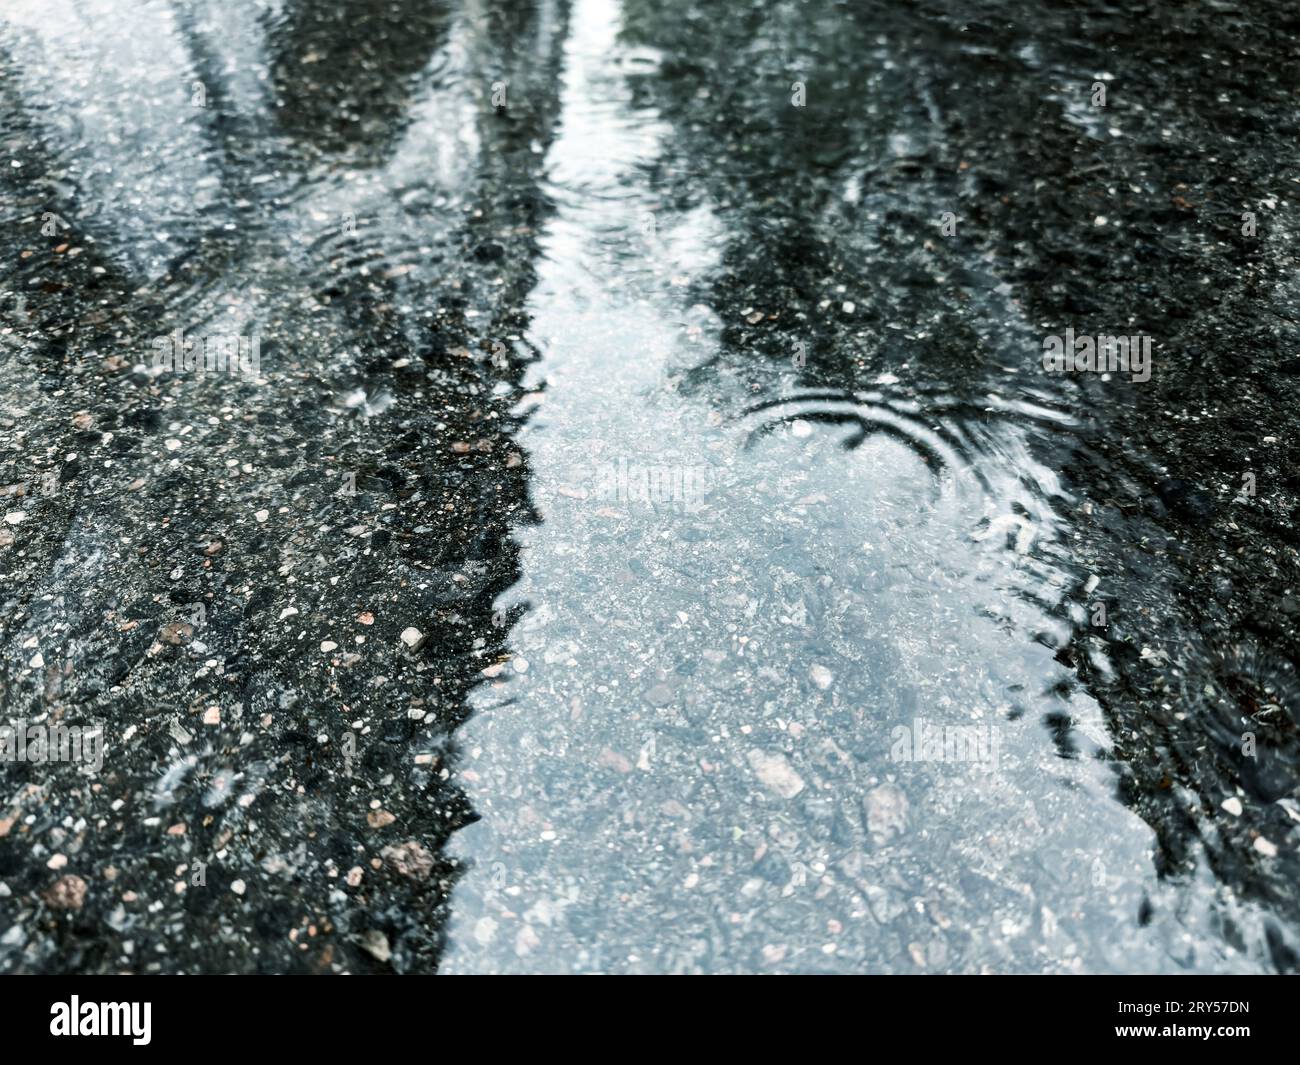 Überfluteter Straßenbelag nach starkem Regen. Wasserpfütze mit Regentropfen und Spiegelungen des Himmels. Stockfoto